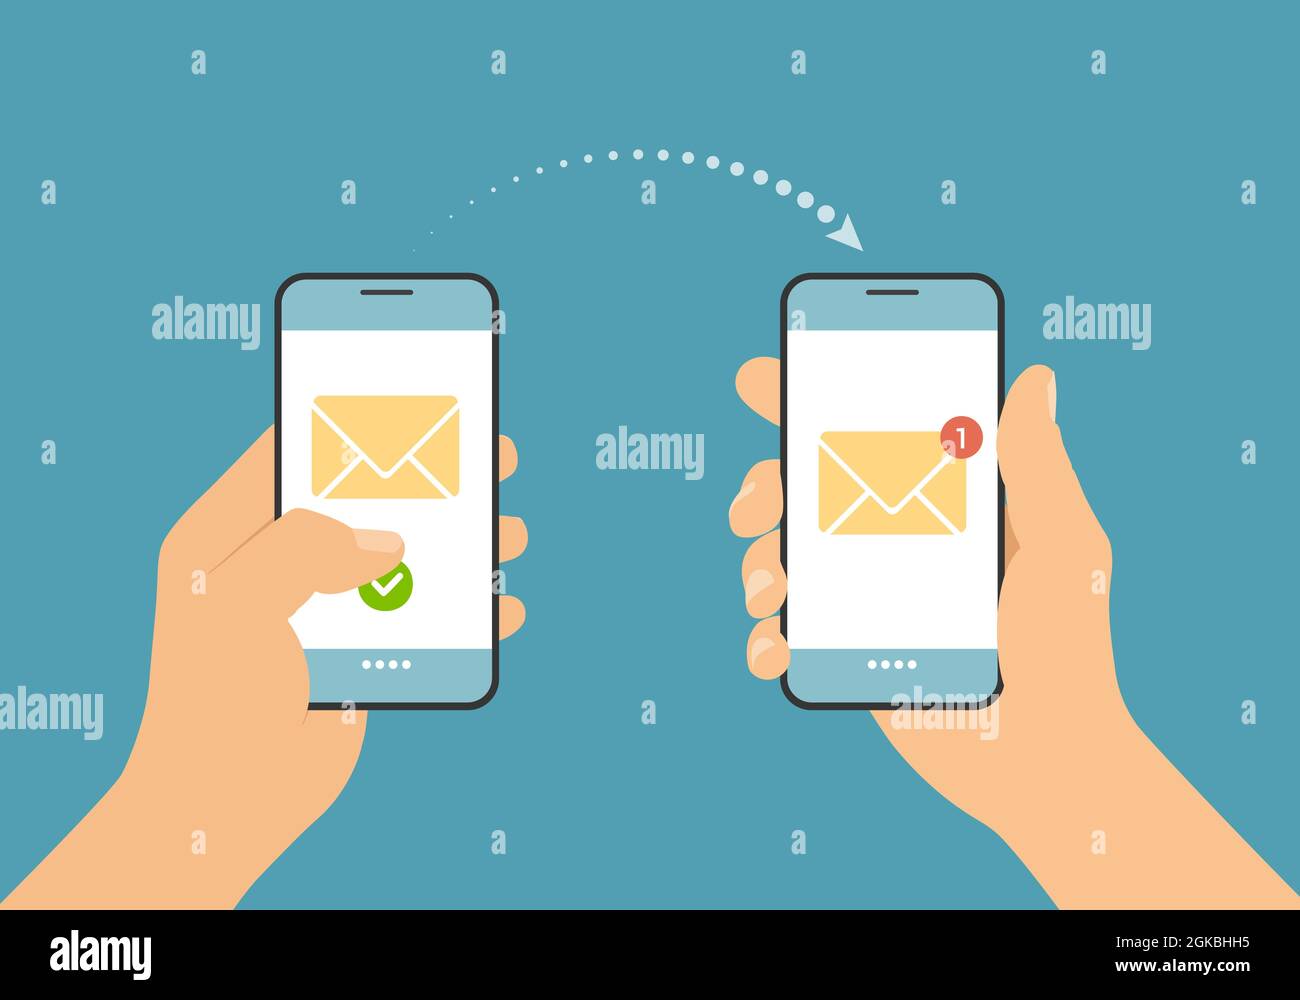 Flache Darstellung einer Hand, die ein Smartphone hält und eine SMS oder E-Mail sendet. Benachrichtigung mit Umschlag auf Handy-Display - vect Stock Vektor